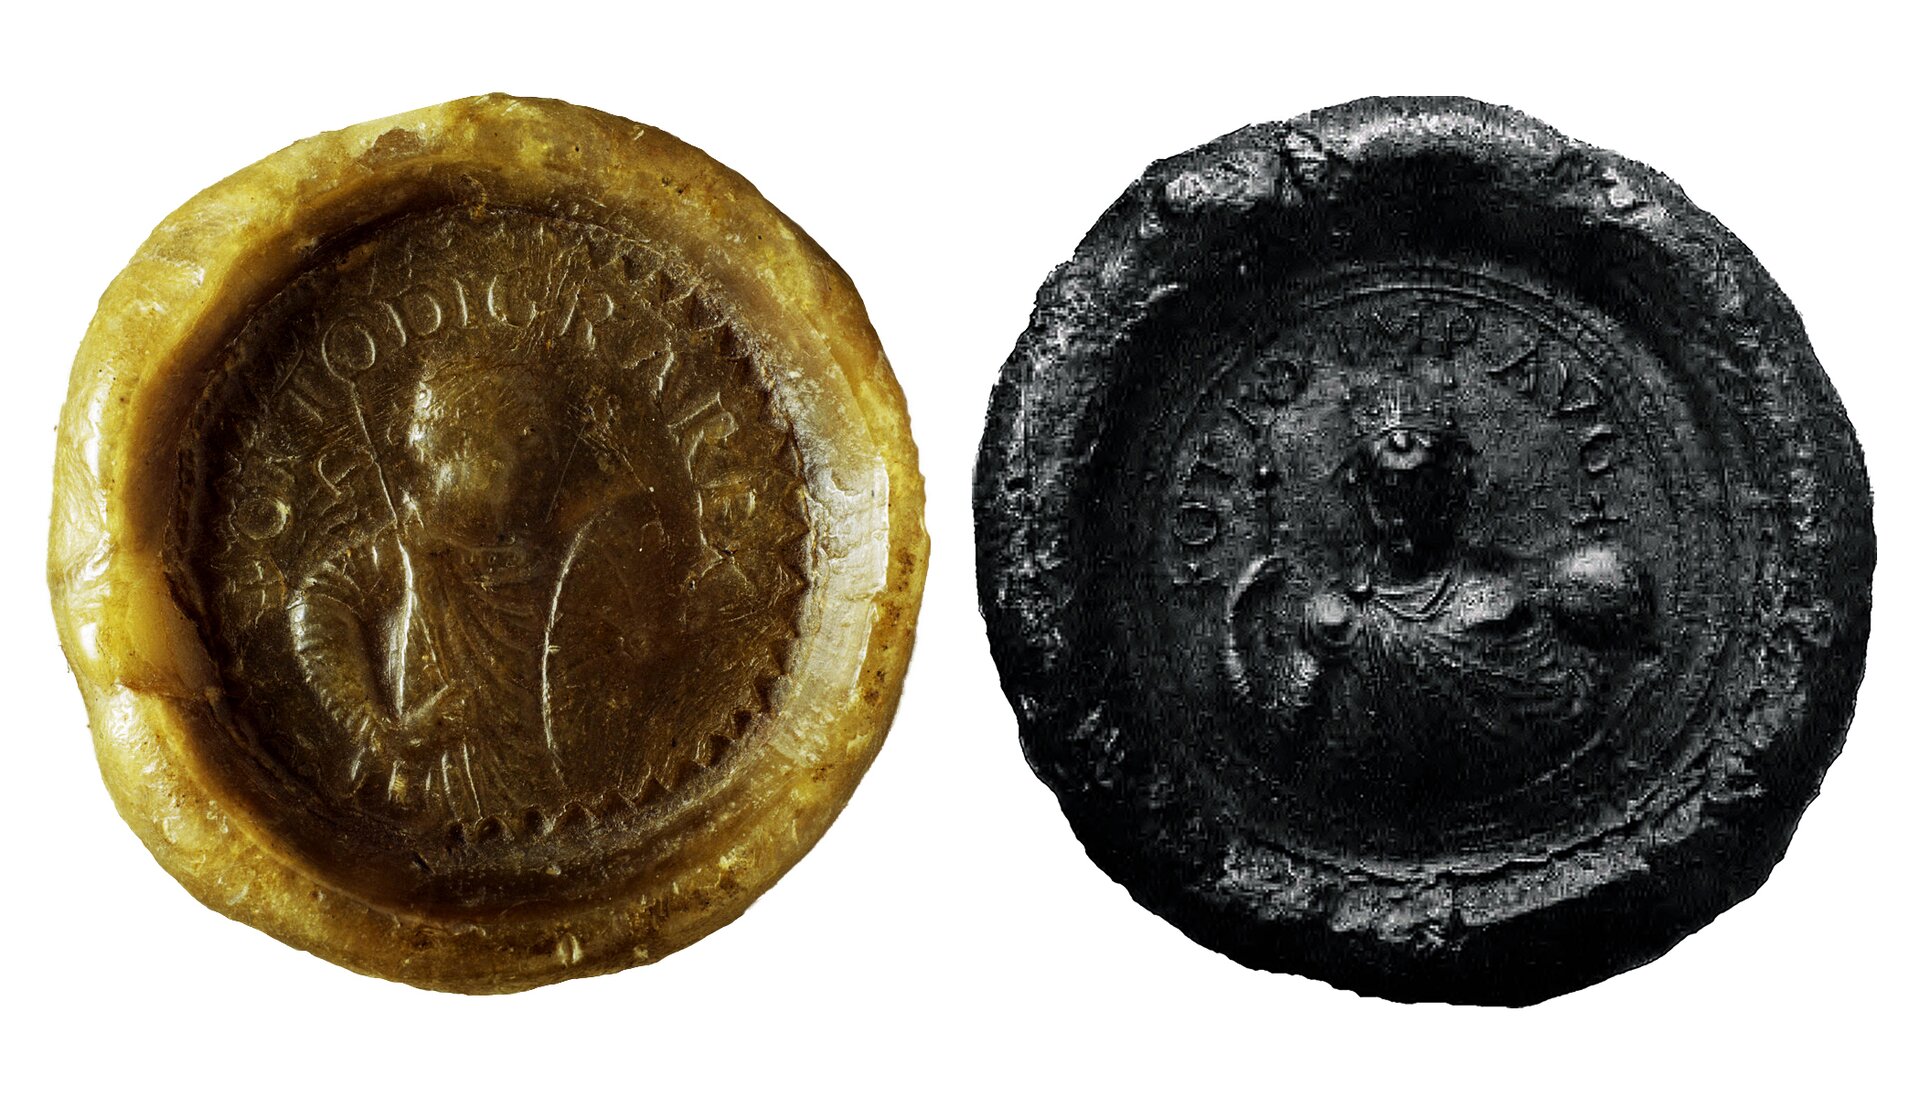 Zdjęcie przedstawia dwie pieczęcie Ottona I – królewska (z lewej) i cesarska (z prawej). Pieczęć po lewej stronie utrzymana w jasnej tonacji koloru wosku, przedstawia zarys sylwetki mężczyzny z chorągwią w prawej dłoni i tarczą w lewej, na głowie nosi koronę. Tekst w legendzie pieczęci zapisany kapitalikami po łacinie. Zdjęcie pieczęci po lewej stronie czarno‑białe, przedstawia zarys sylwetki mężczyzny, na głowie nosi hełm, w prawej dłoni dzierży włócznię, w lewej jabłko. Wokół sylwetki mężczyzny napis legendy w otoku pieczęci, zapisany kapitalikami po łacinie. 